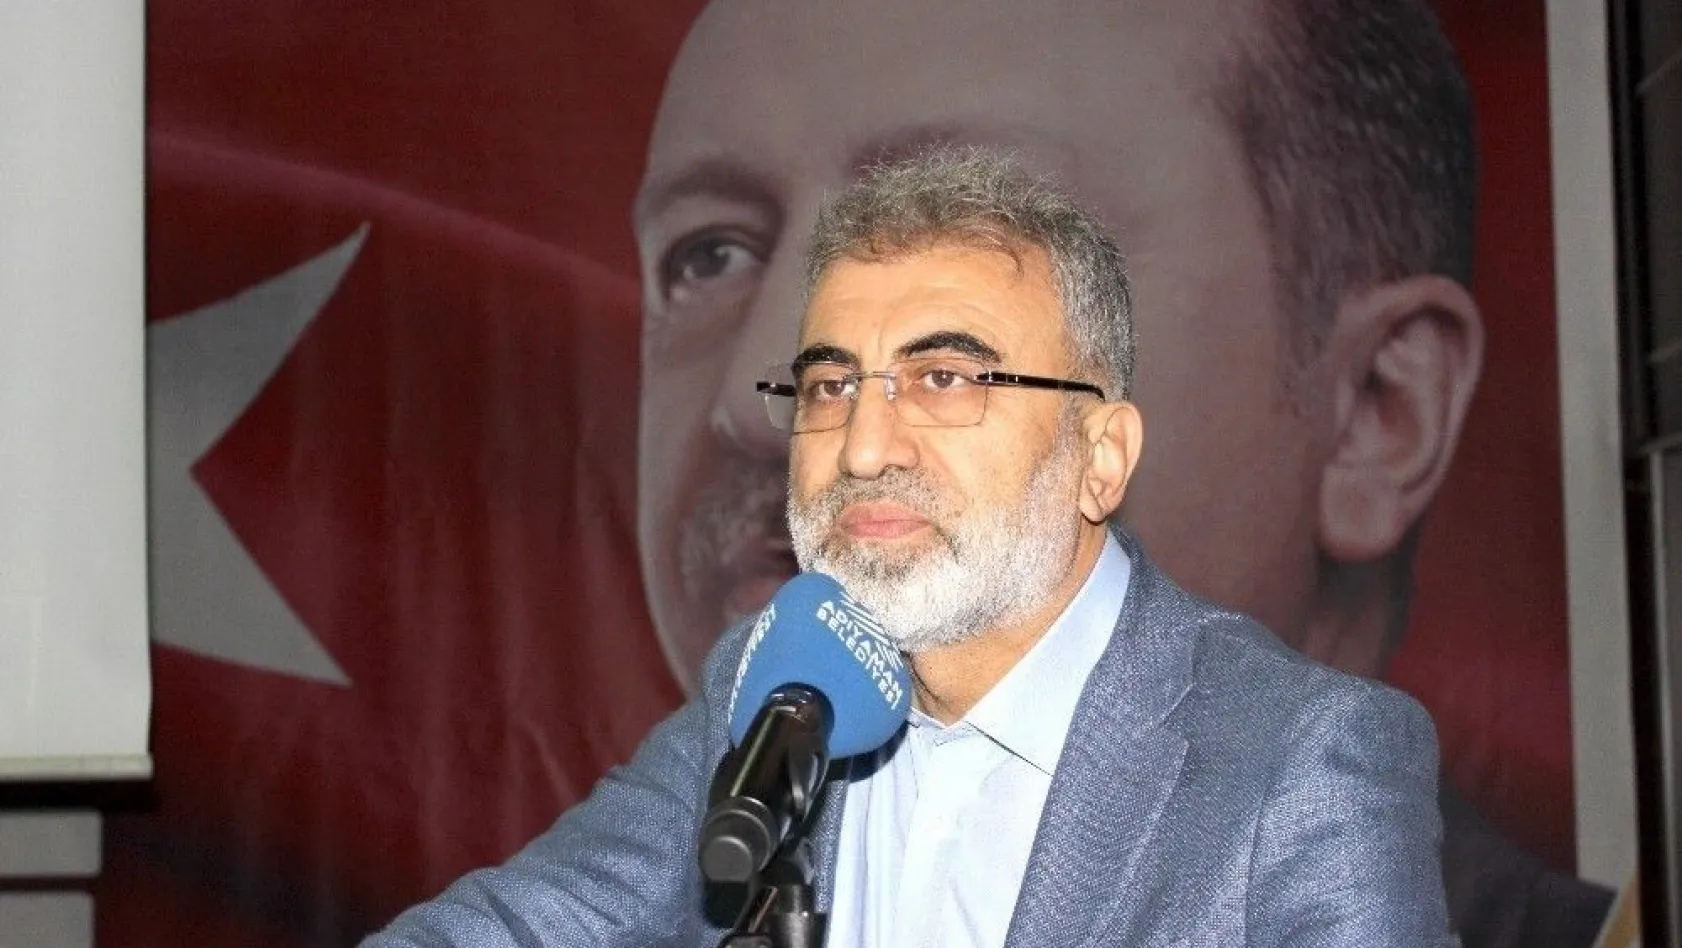 Eski Bakan Taner Yıldız: 'Uzan Grubu AK Parti iktidarını tehdit etti'
